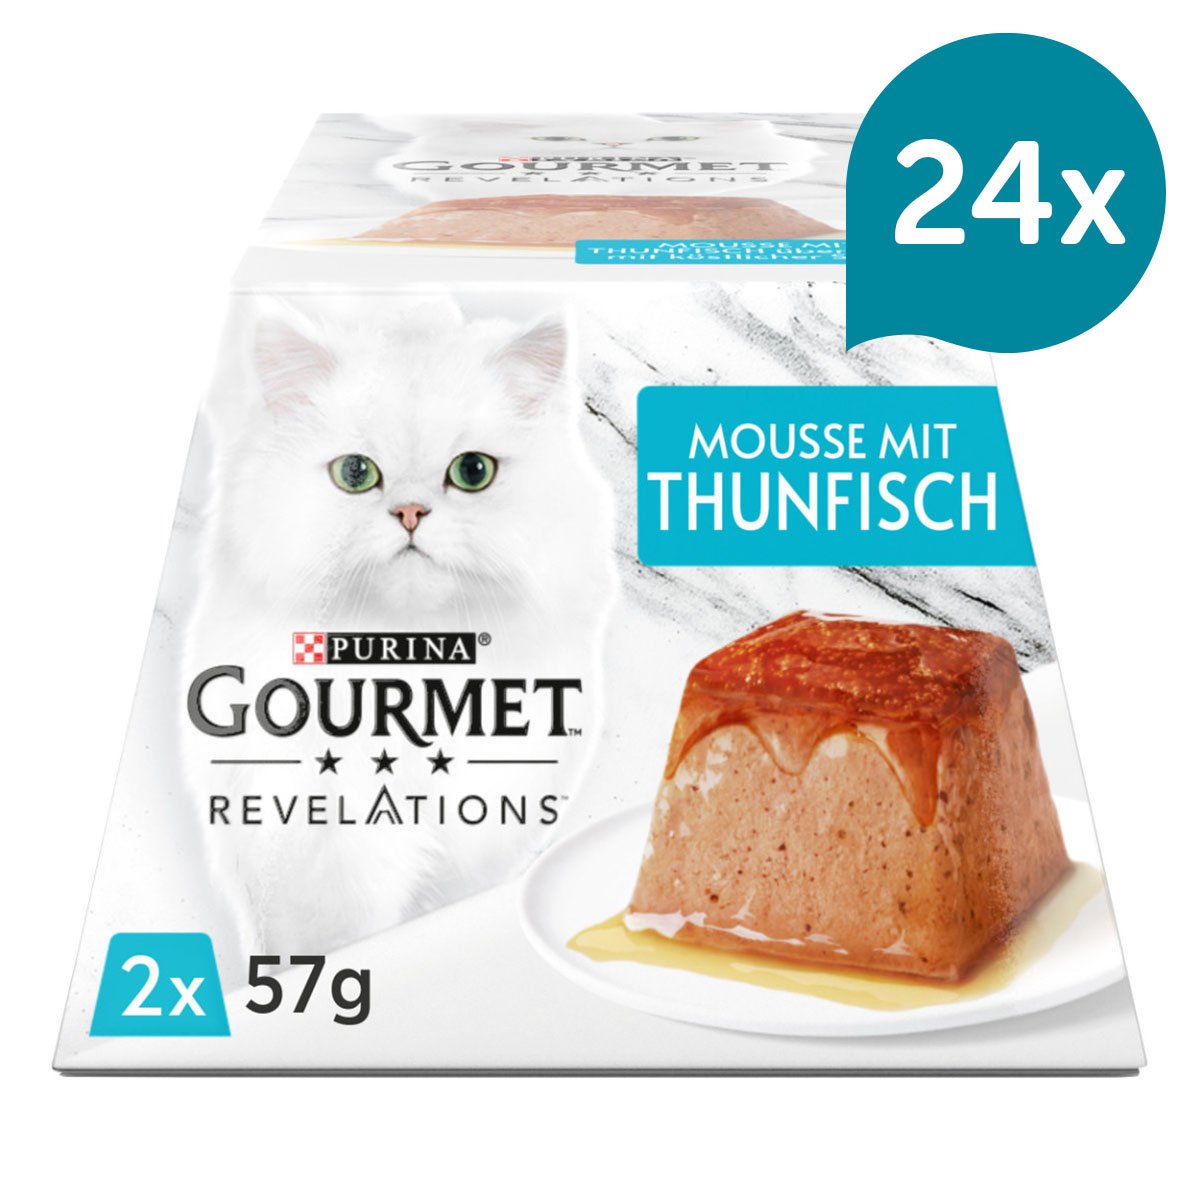 GOURMET Revelations Mousse in Sauce mit Thunfisch 24x2x57g von Gourmet